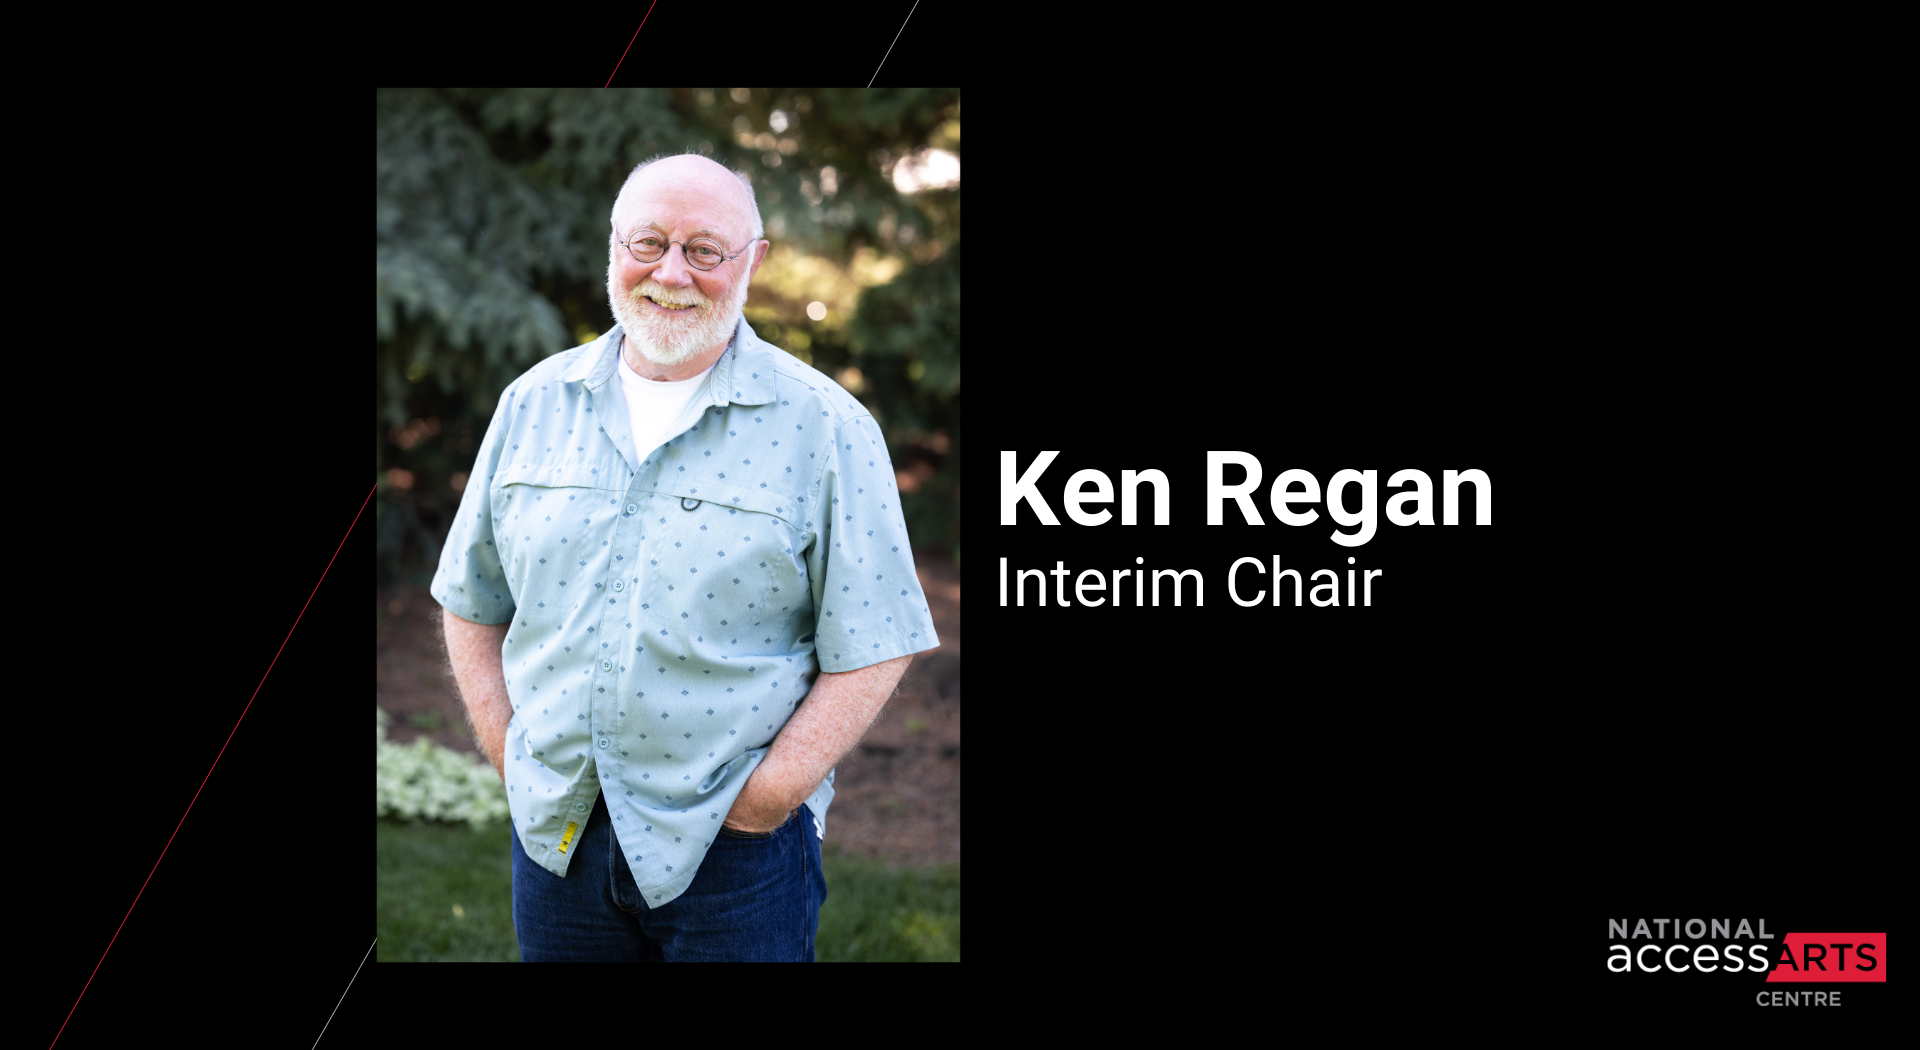 Welcome Ken Regan, Interim Chair